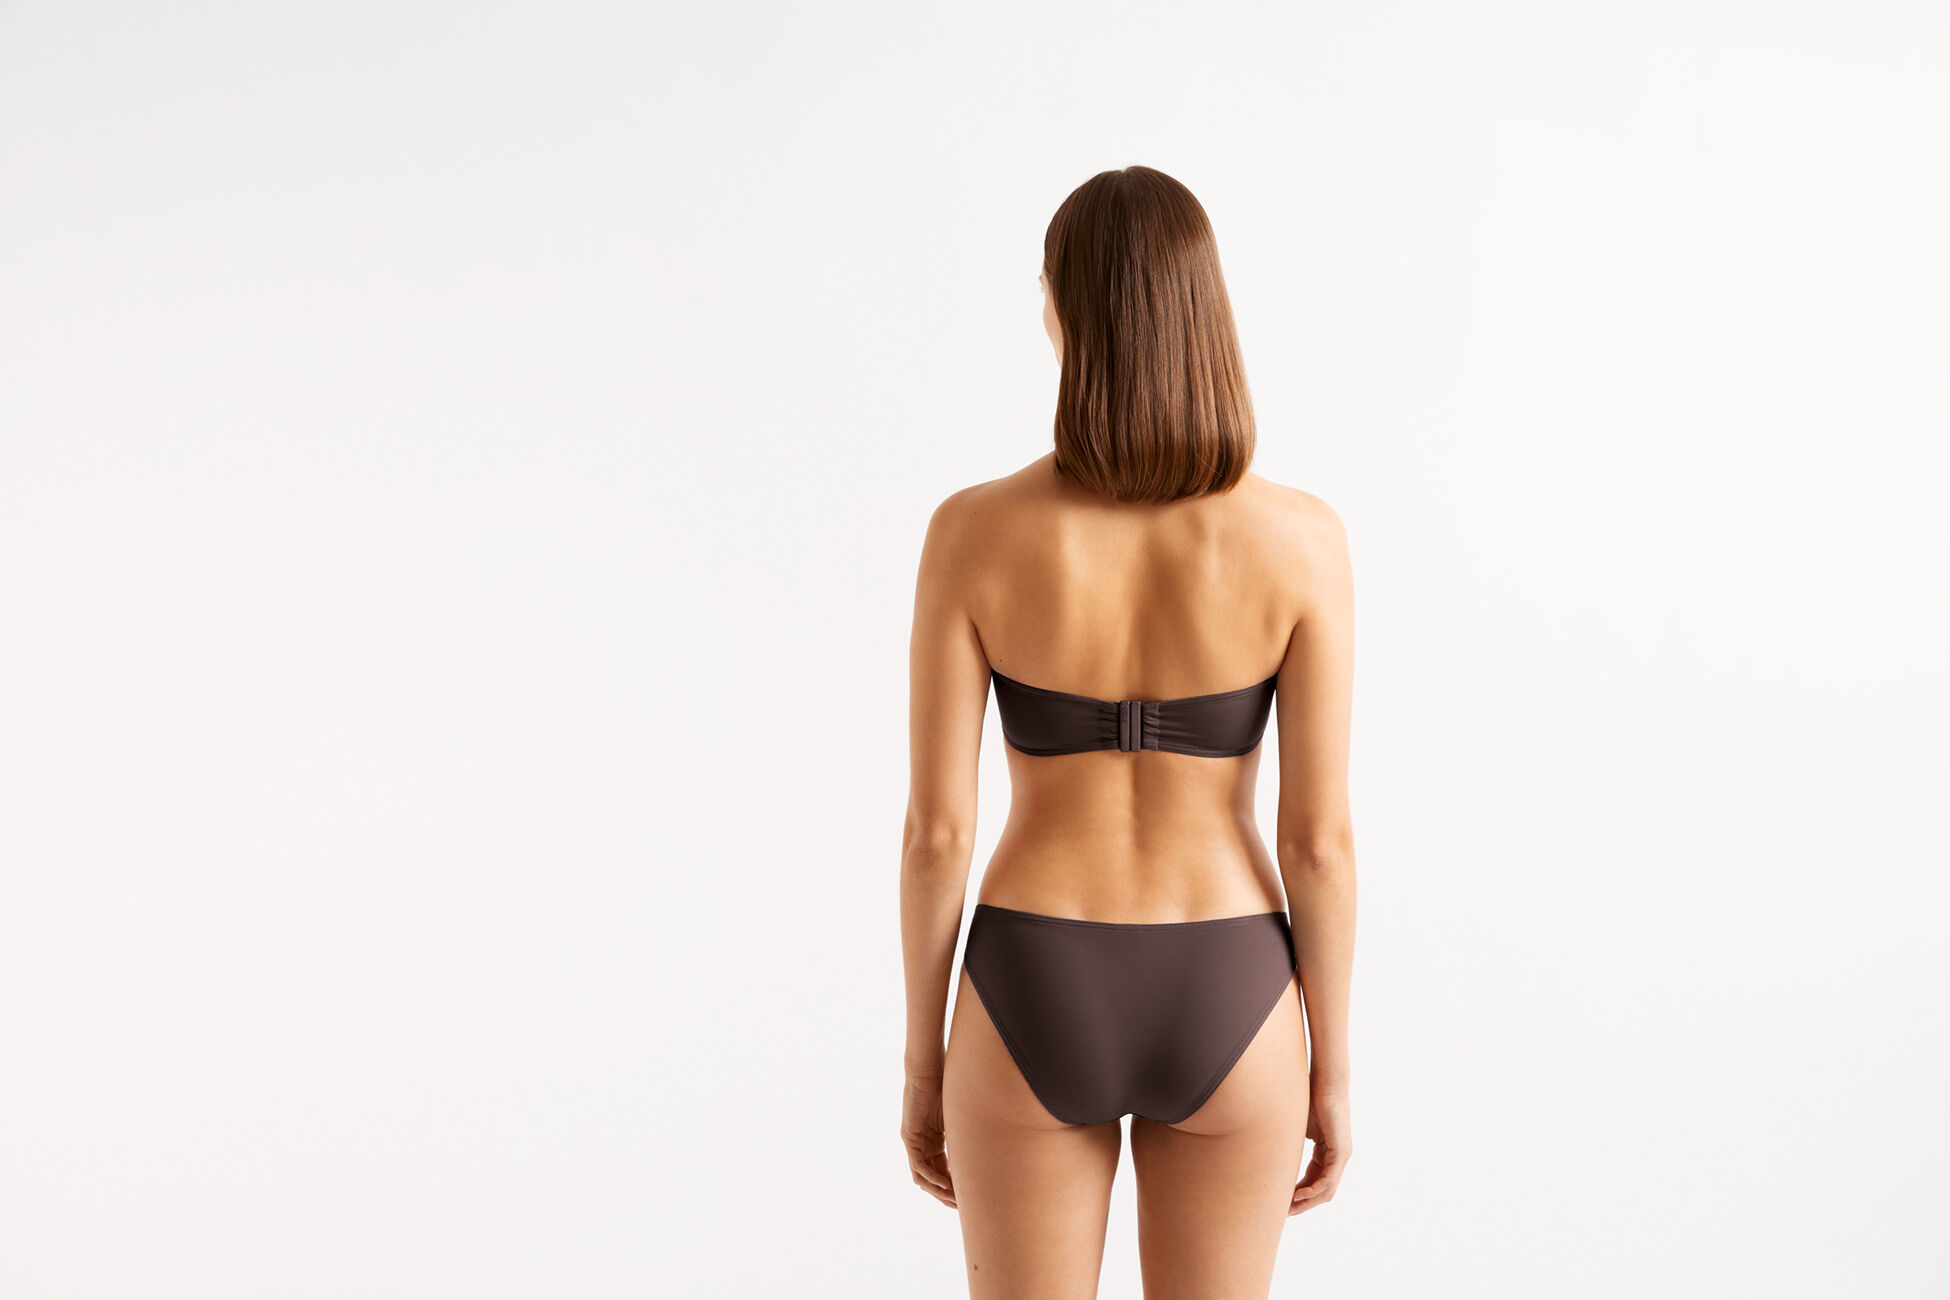 Cavale Thin bikini briefs standard view NaN